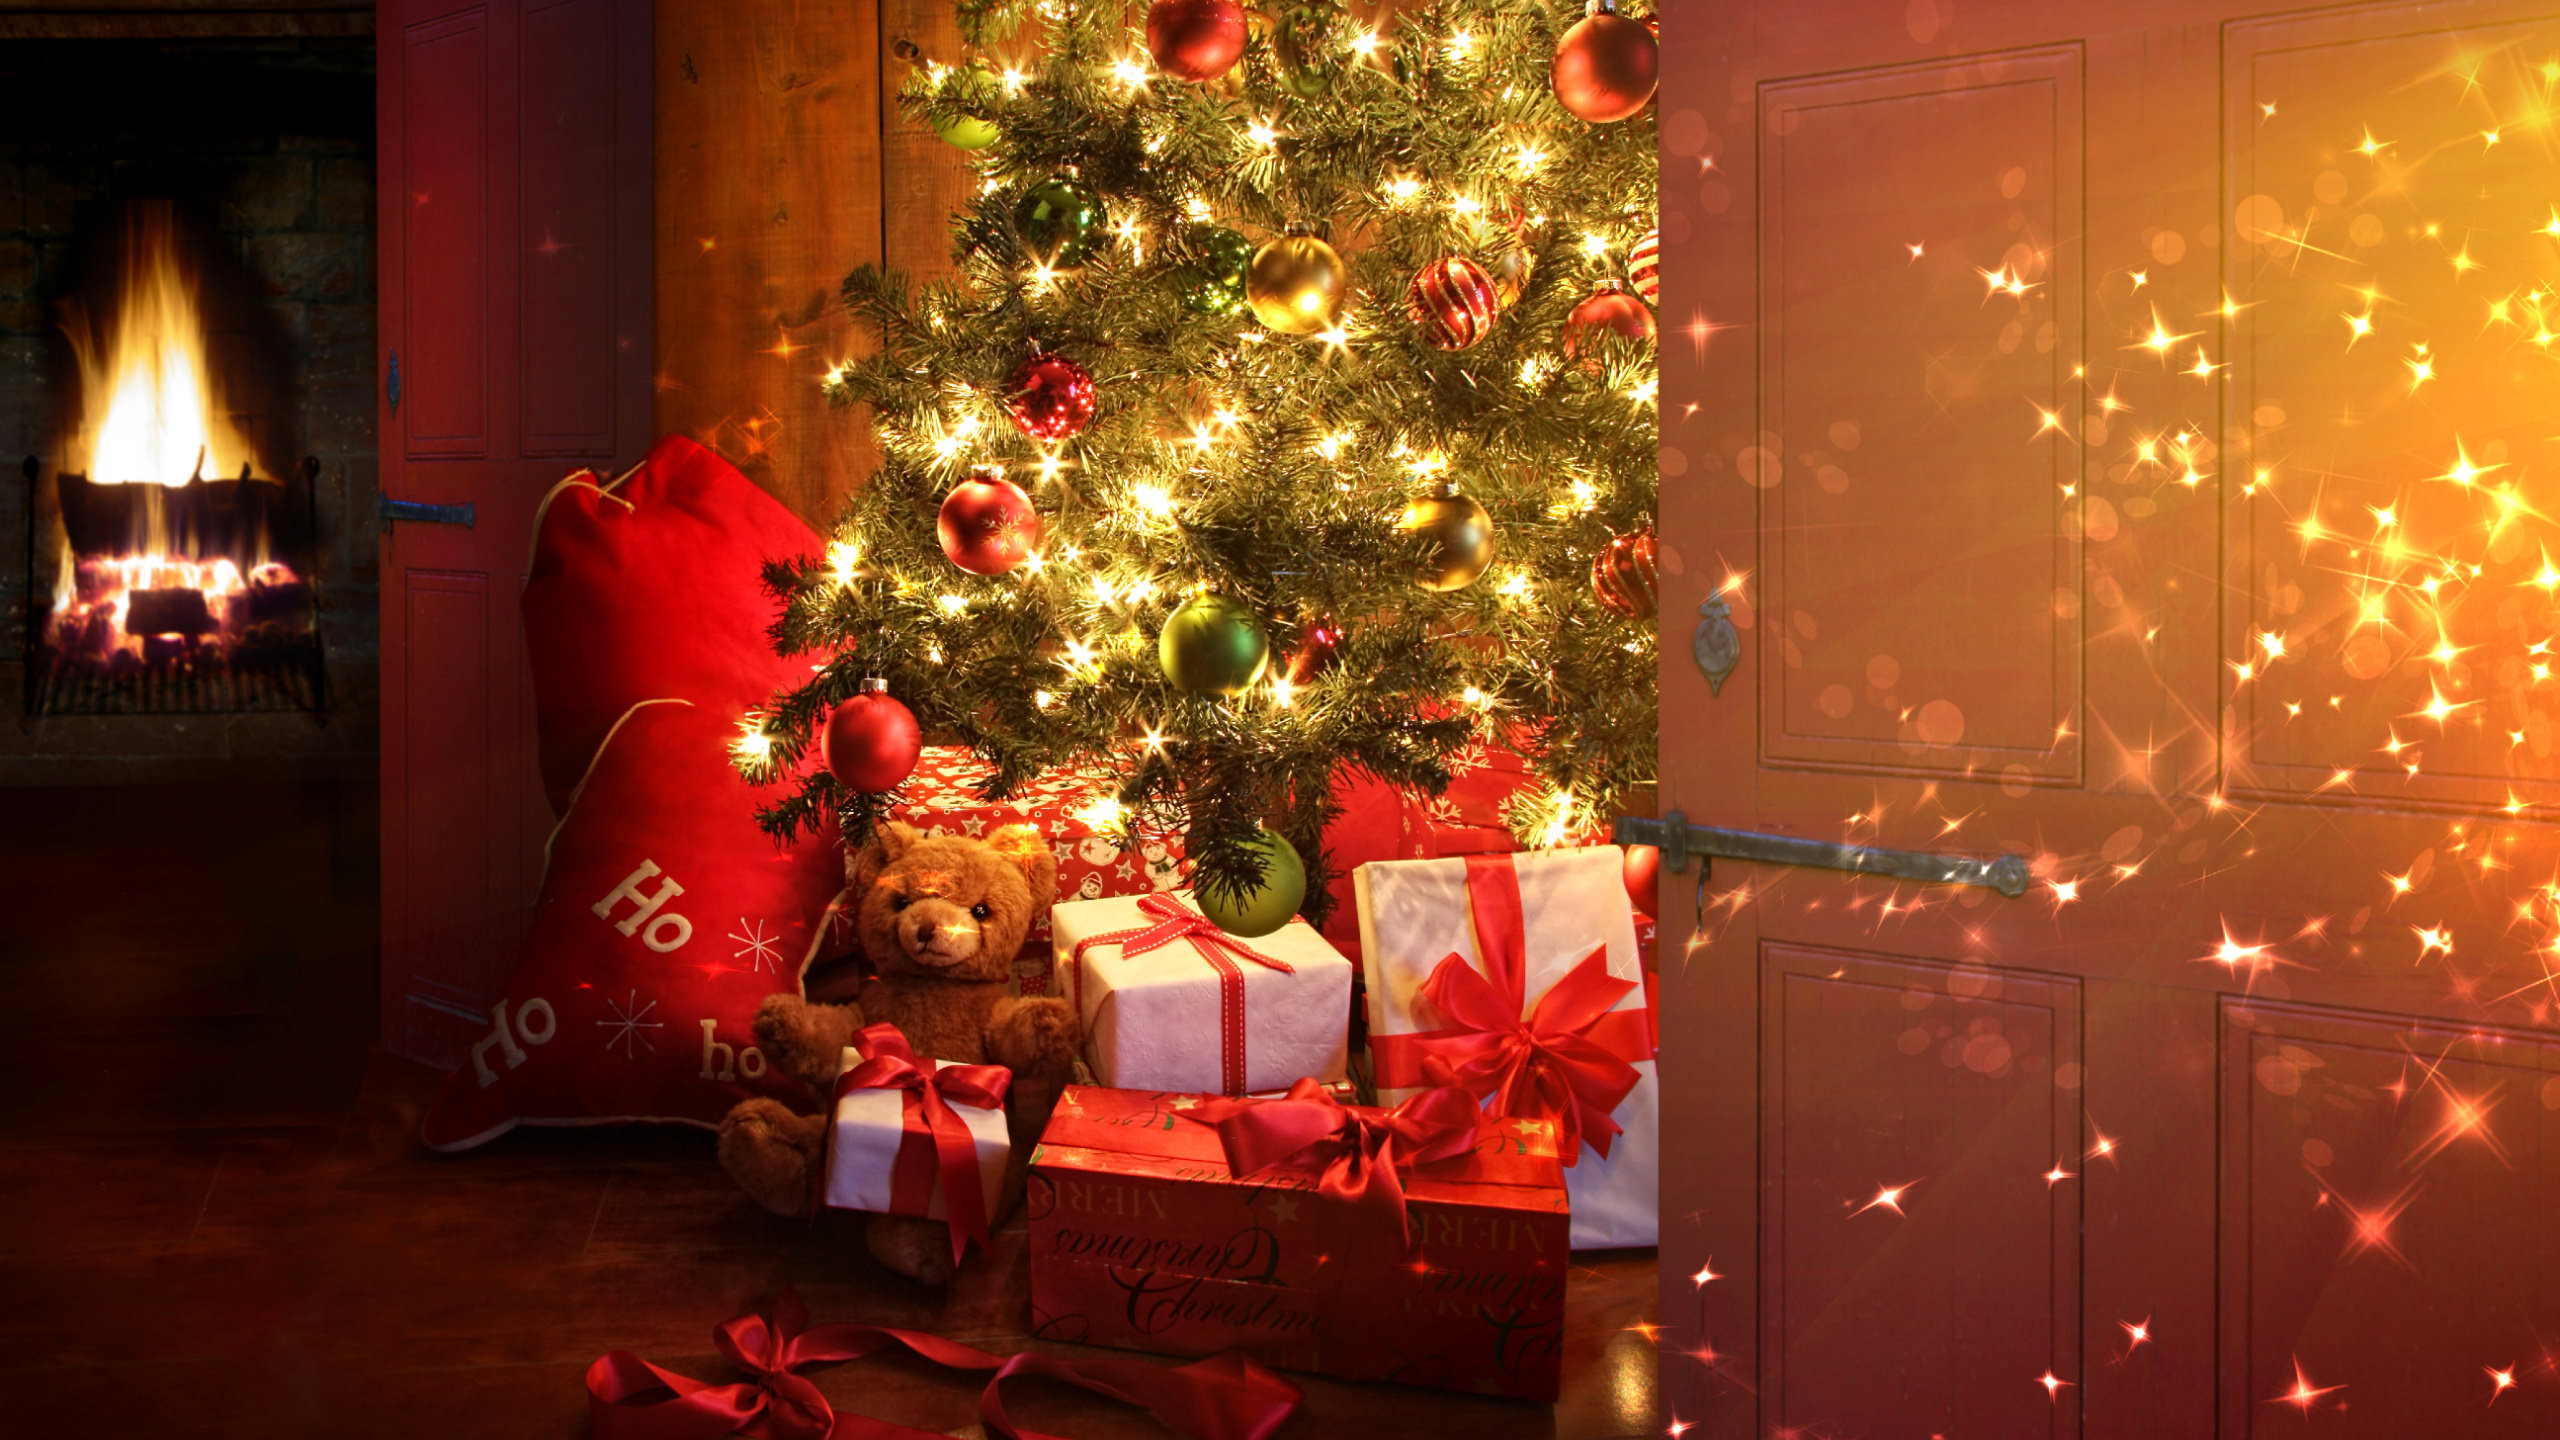 圣诞节那天, 圣诞树, 圣诞节, 圣诞装饰, 圣诞节的装饰品 壁纸 2560x1440 允许